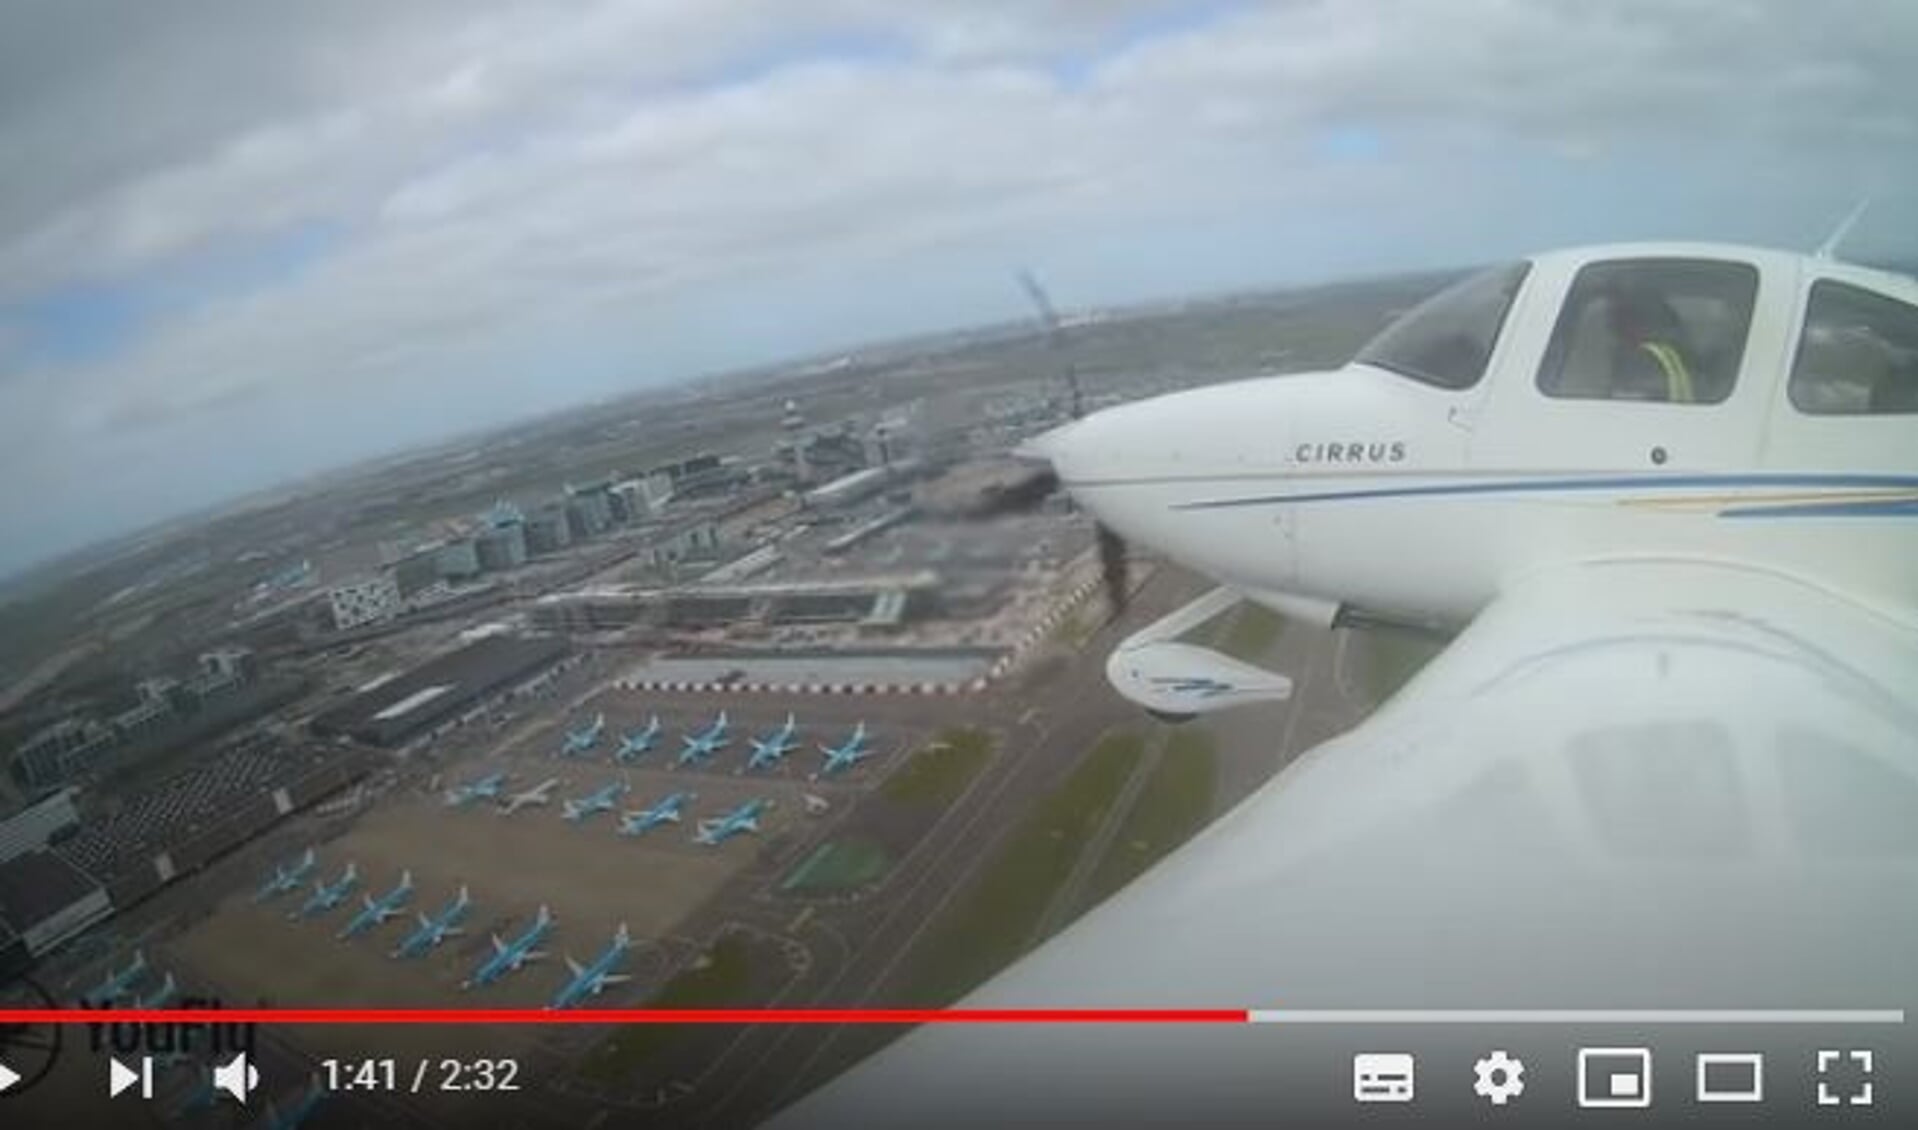 In de video zijn de geparkeerde vliegtuigen op Schiphol duidelijk te zien.